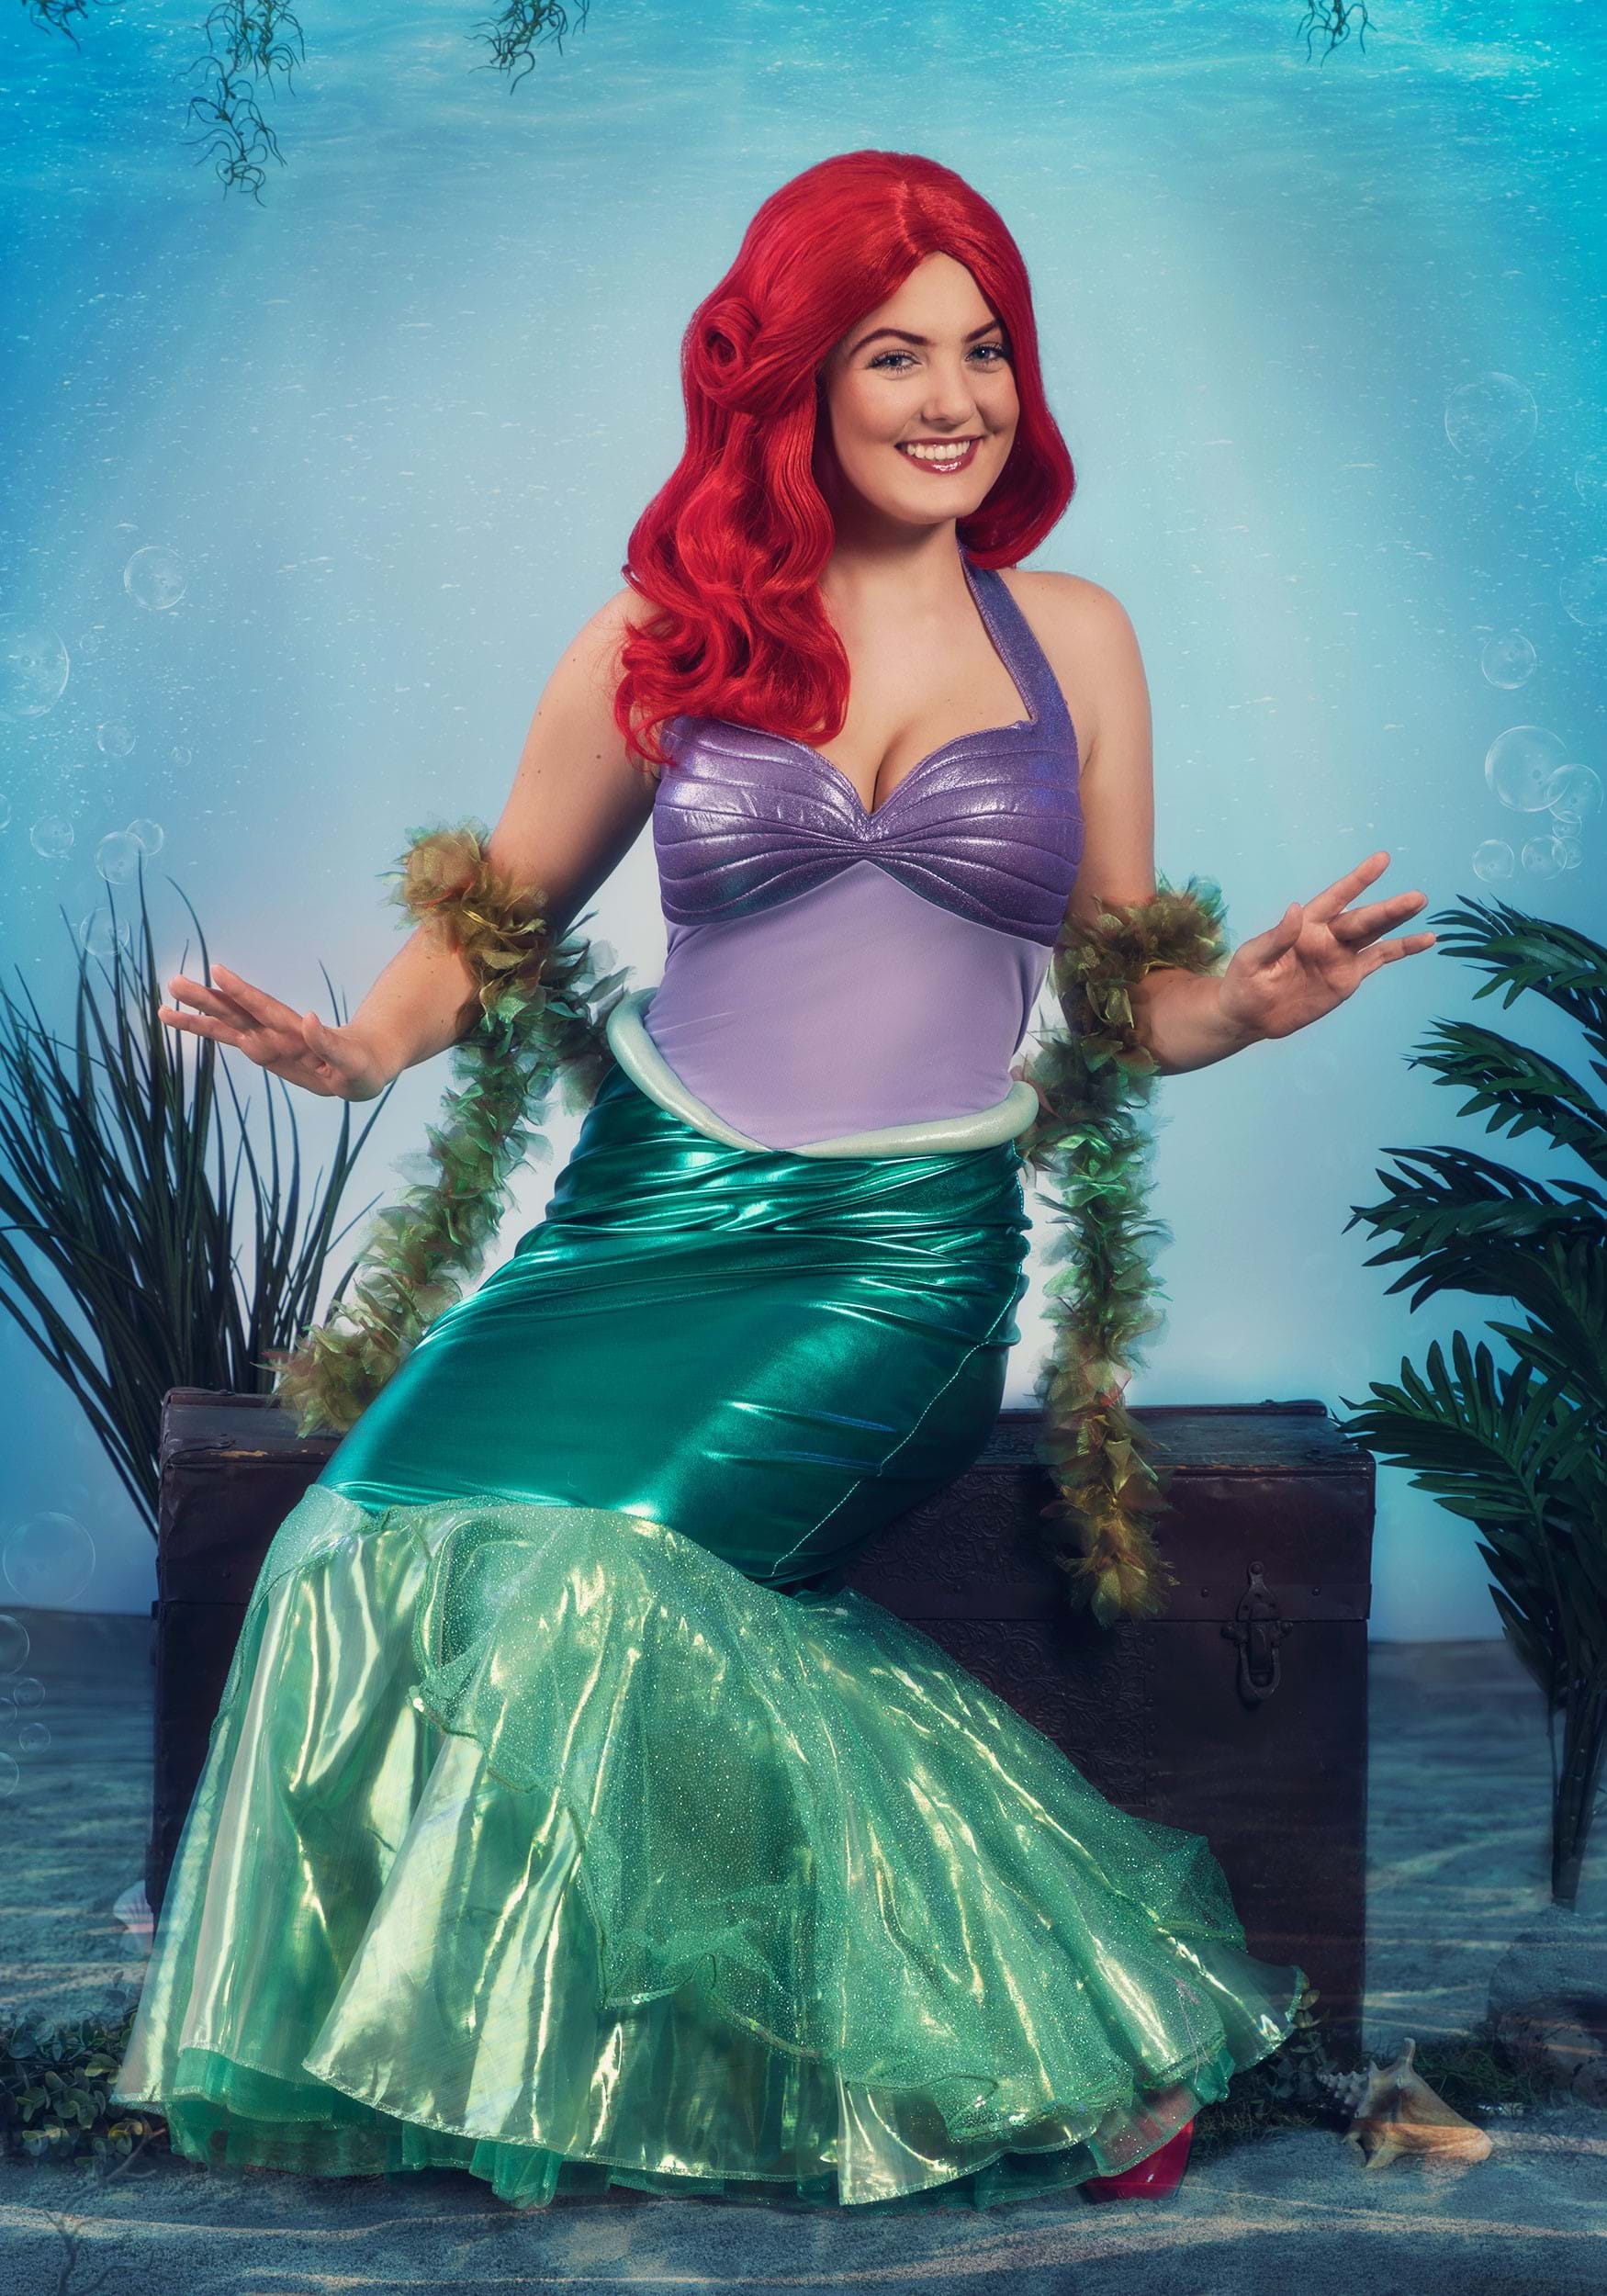 Little Mermaid Ariel Deluxe Fancy Dress Costume For Women